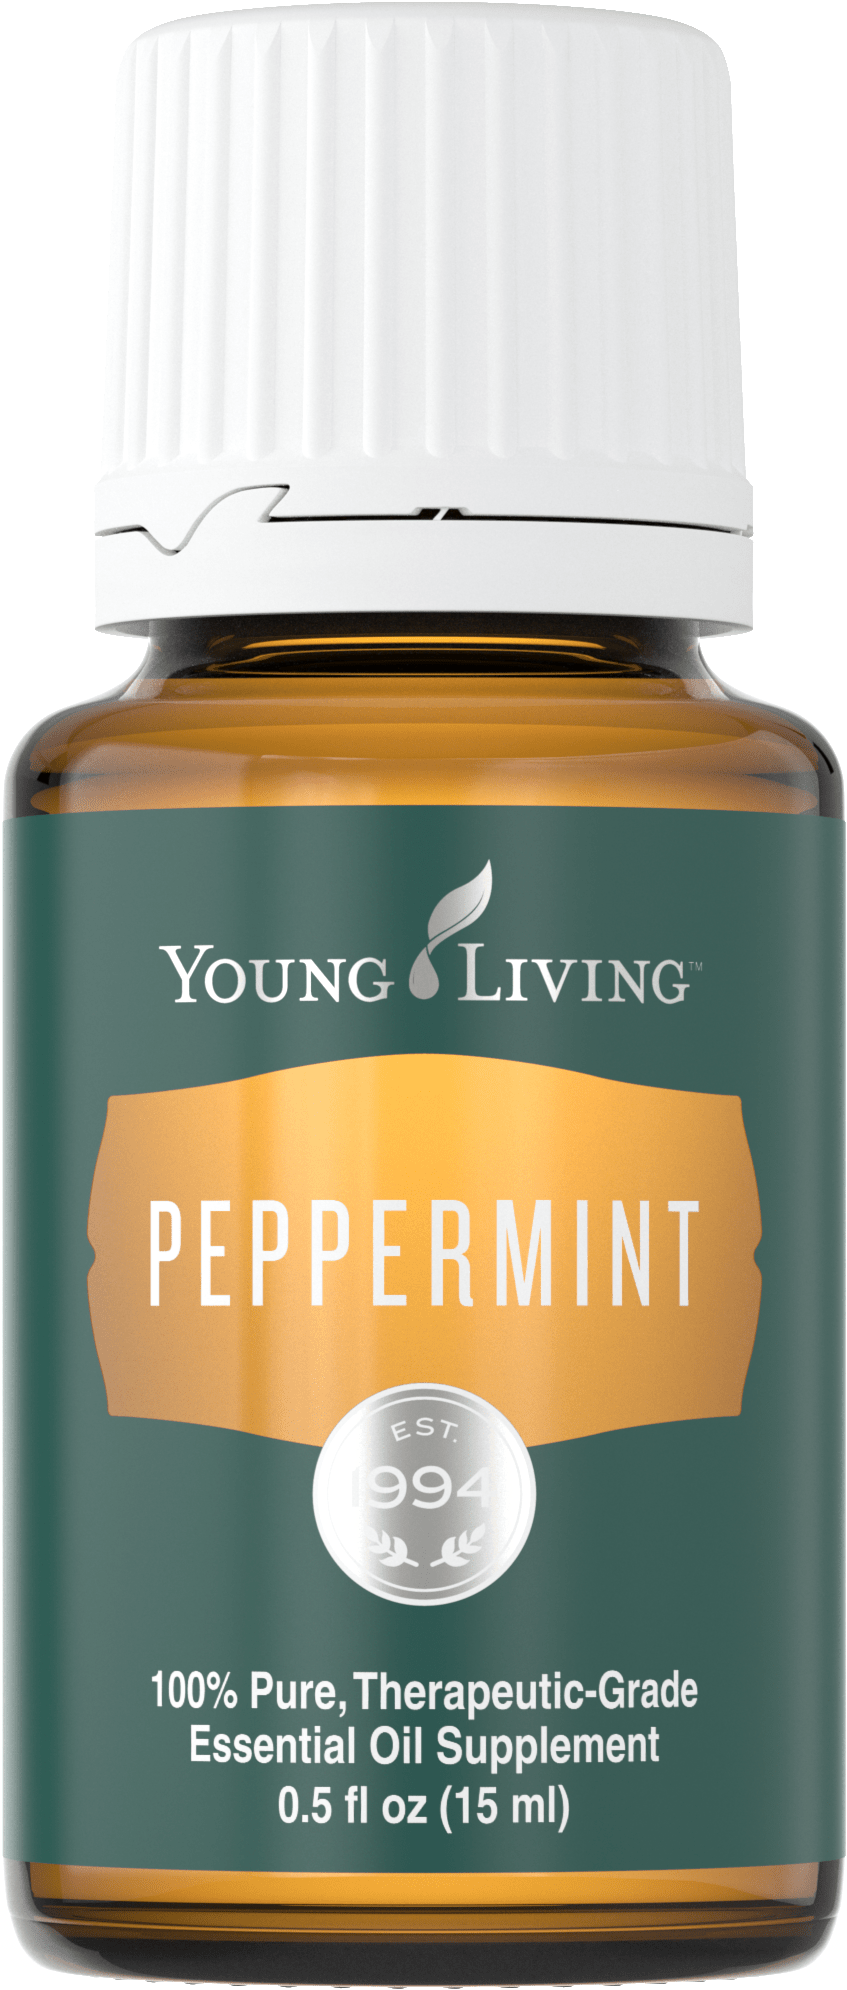 A Bottle Of Peppermint Oil